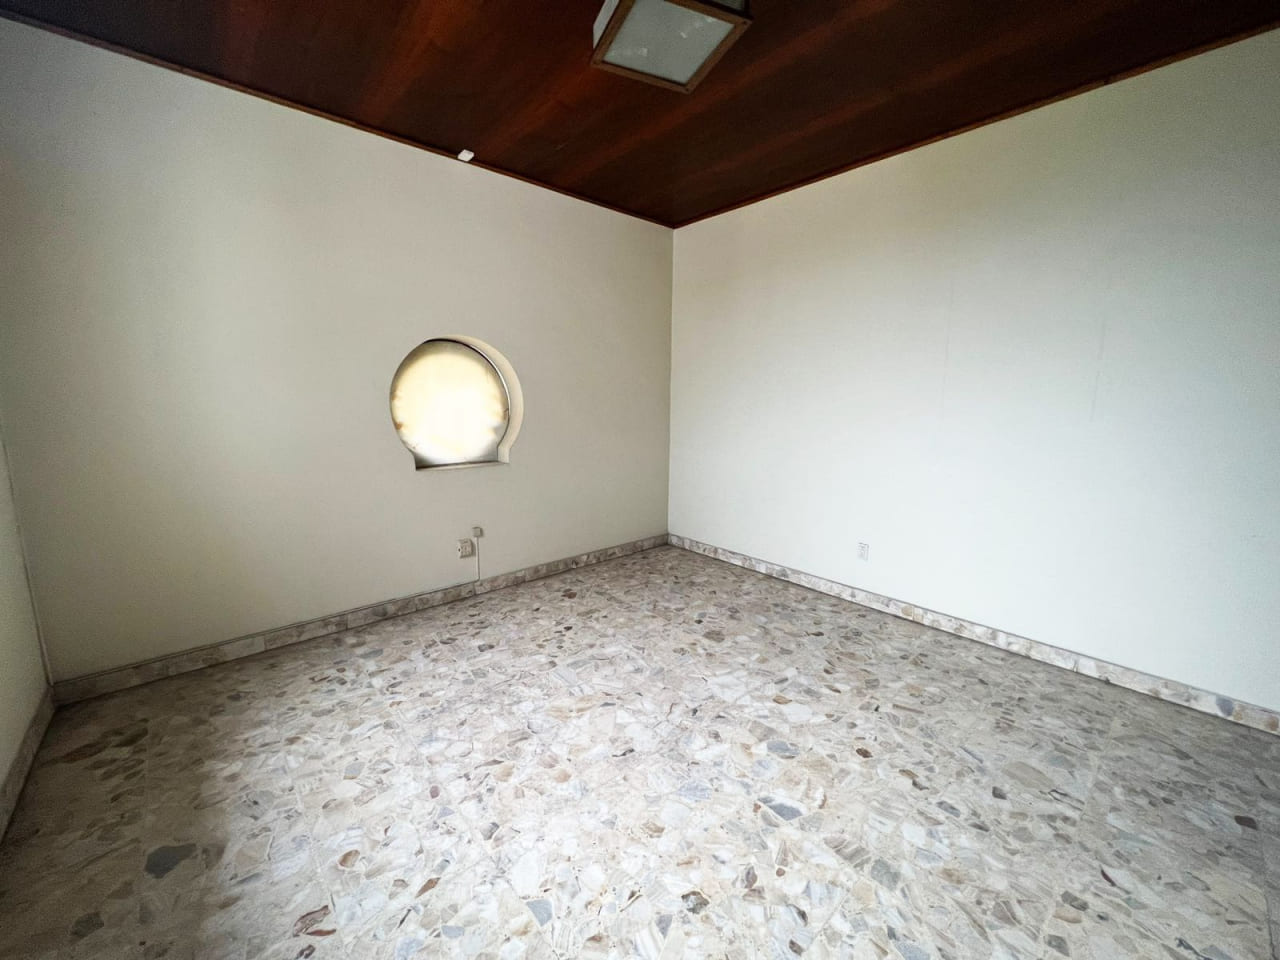 Amplia habitación con paredes color blanco, techo de madera con lámpara colgante y una ventana redonda con vista al jardín.